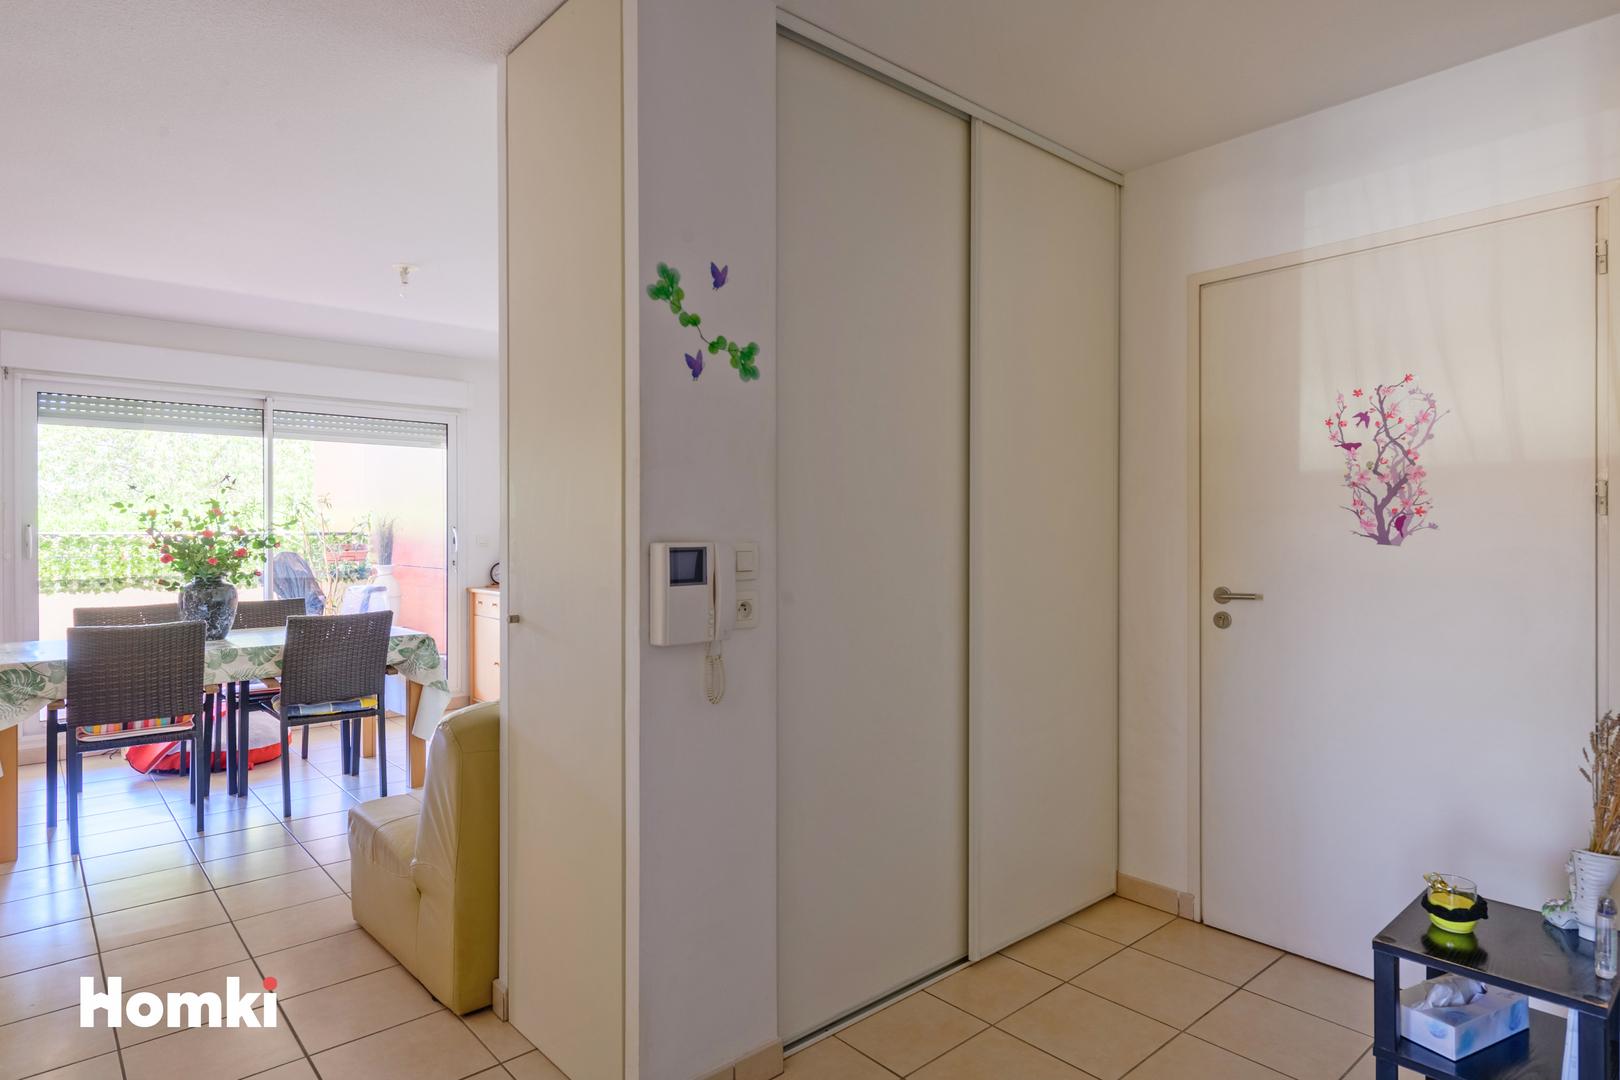 Homki - Vente Appartement  de 60.0 m² à Nîmes 30900